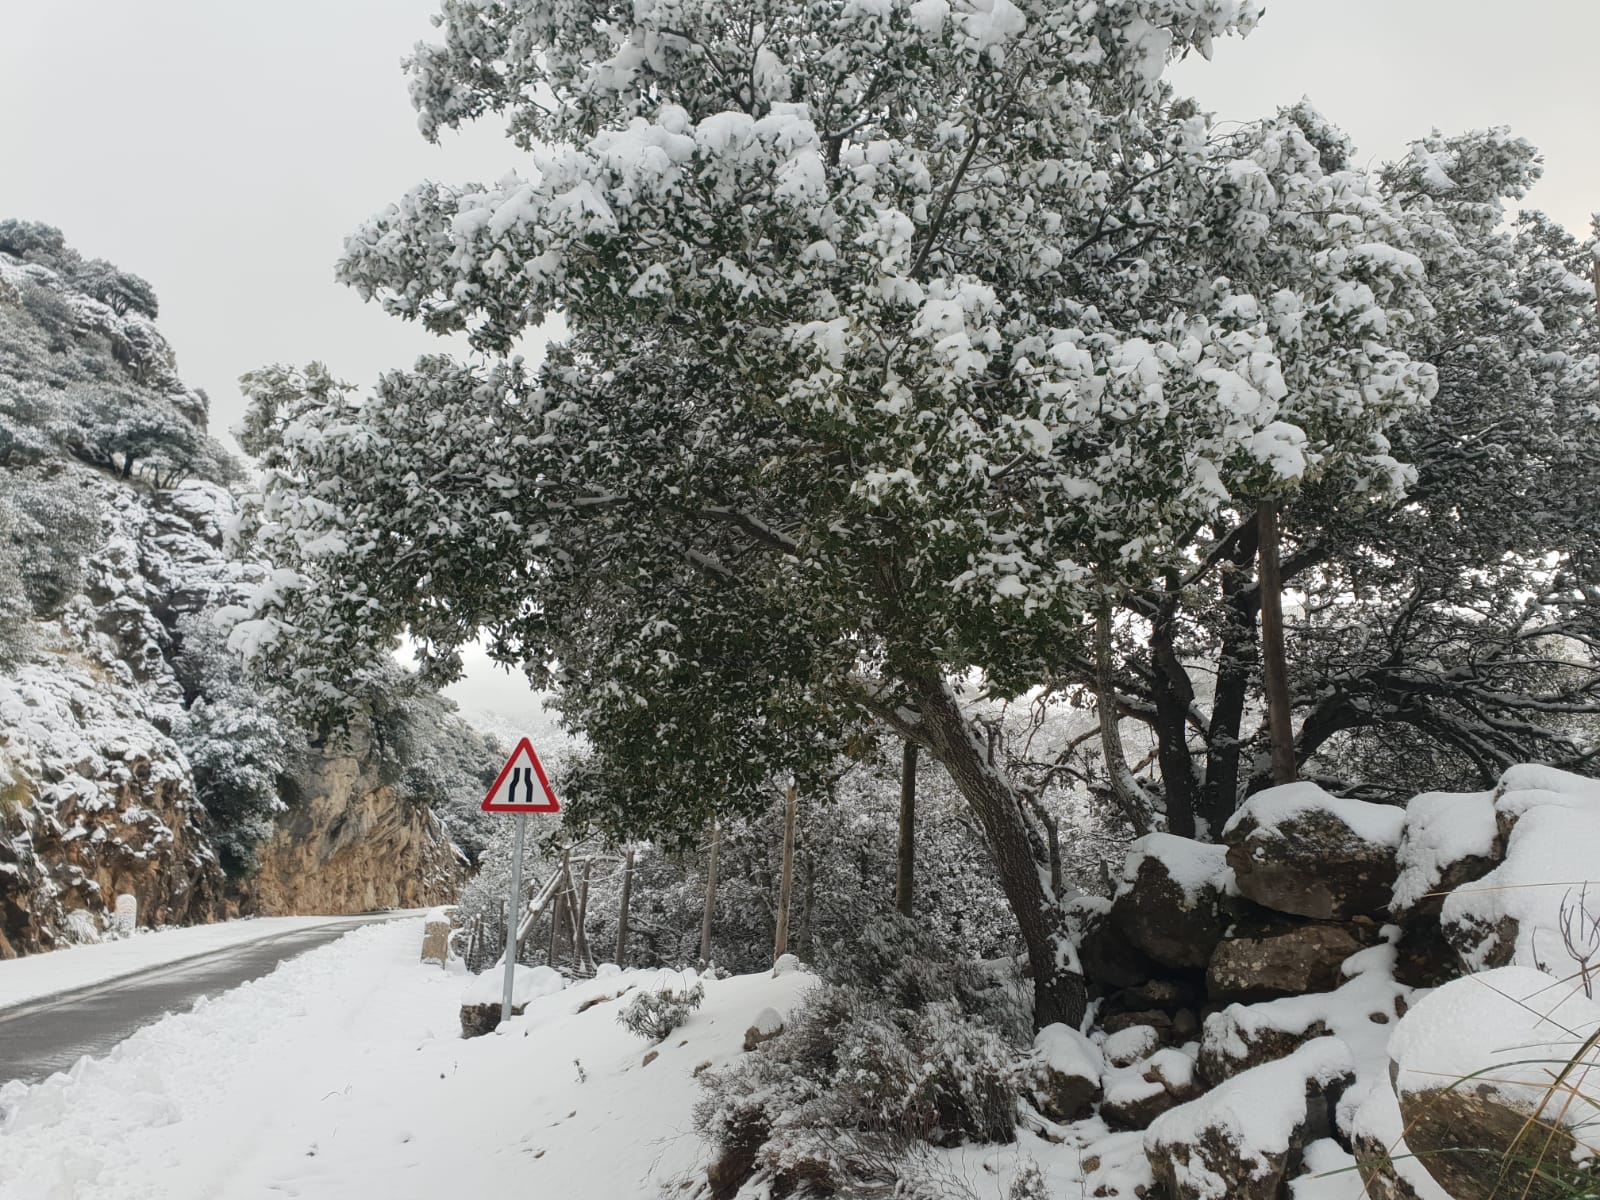 Alerta taronja per neu i vermella per baixa temperatura a partir dels 600 metres a la Tramuntana